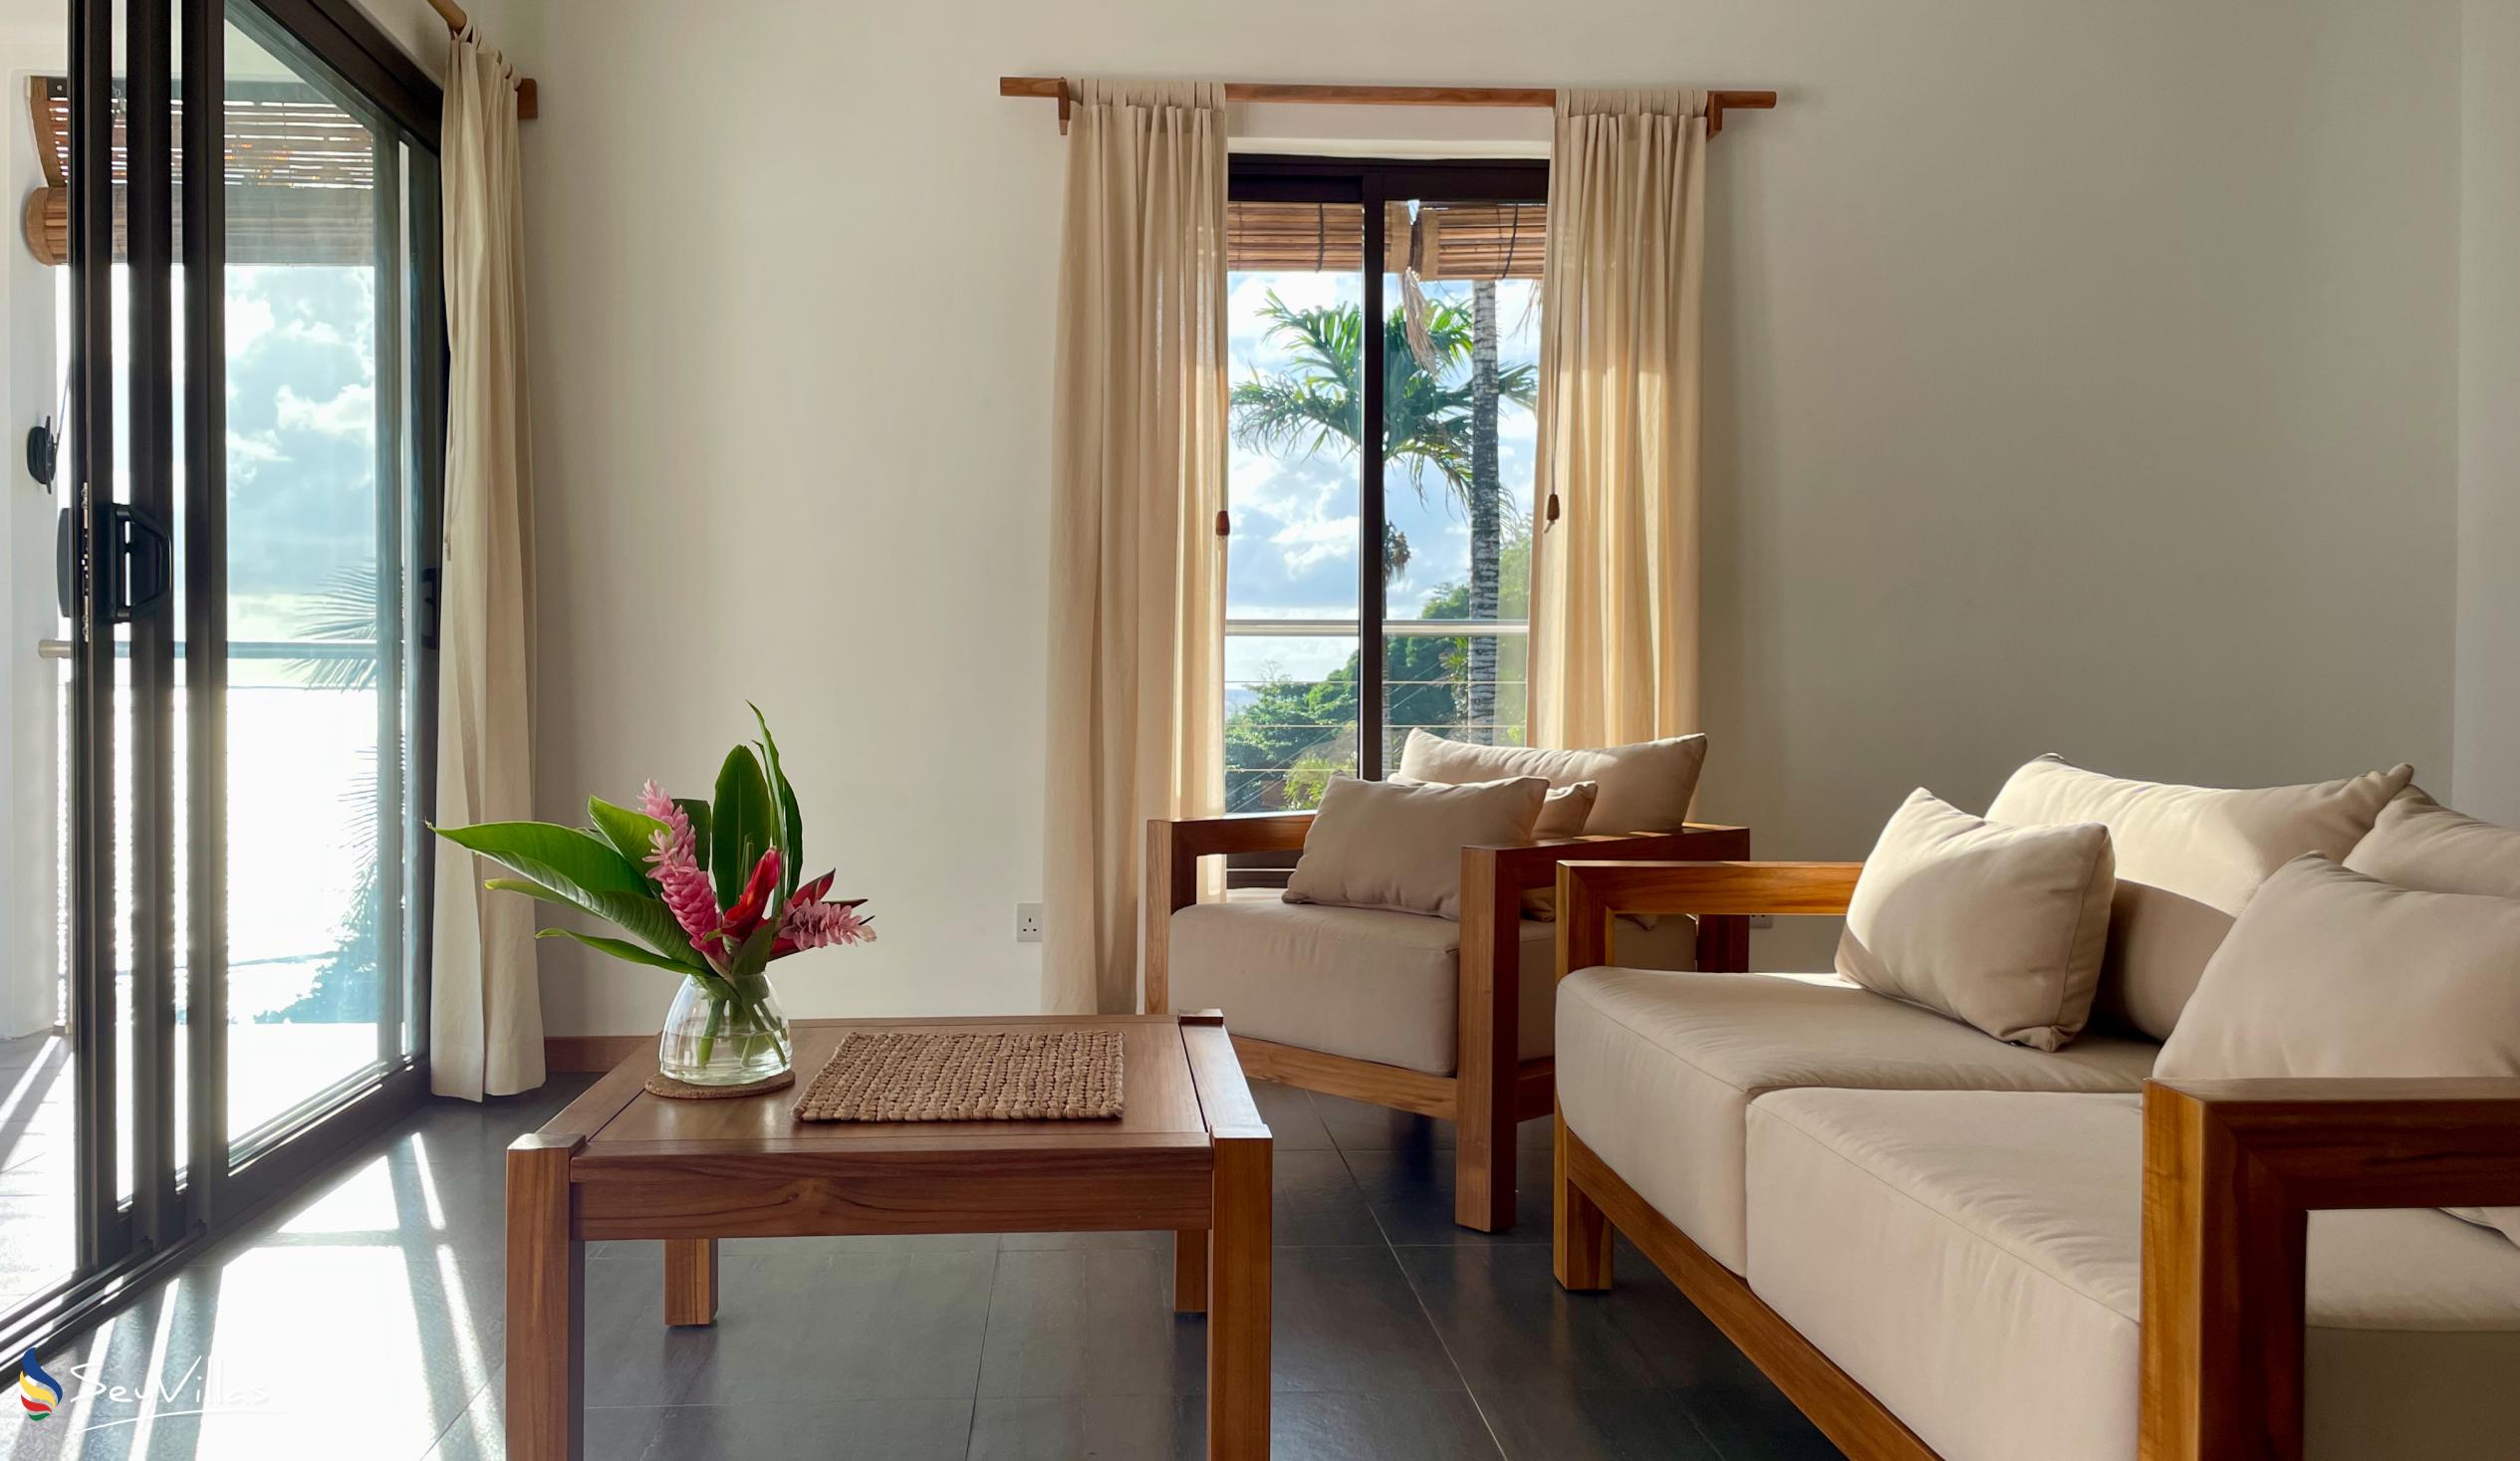 Photo 136: Chalets Bougainville - Upper Floor Apartment Villa Lemon - Mahé (Seychelles)